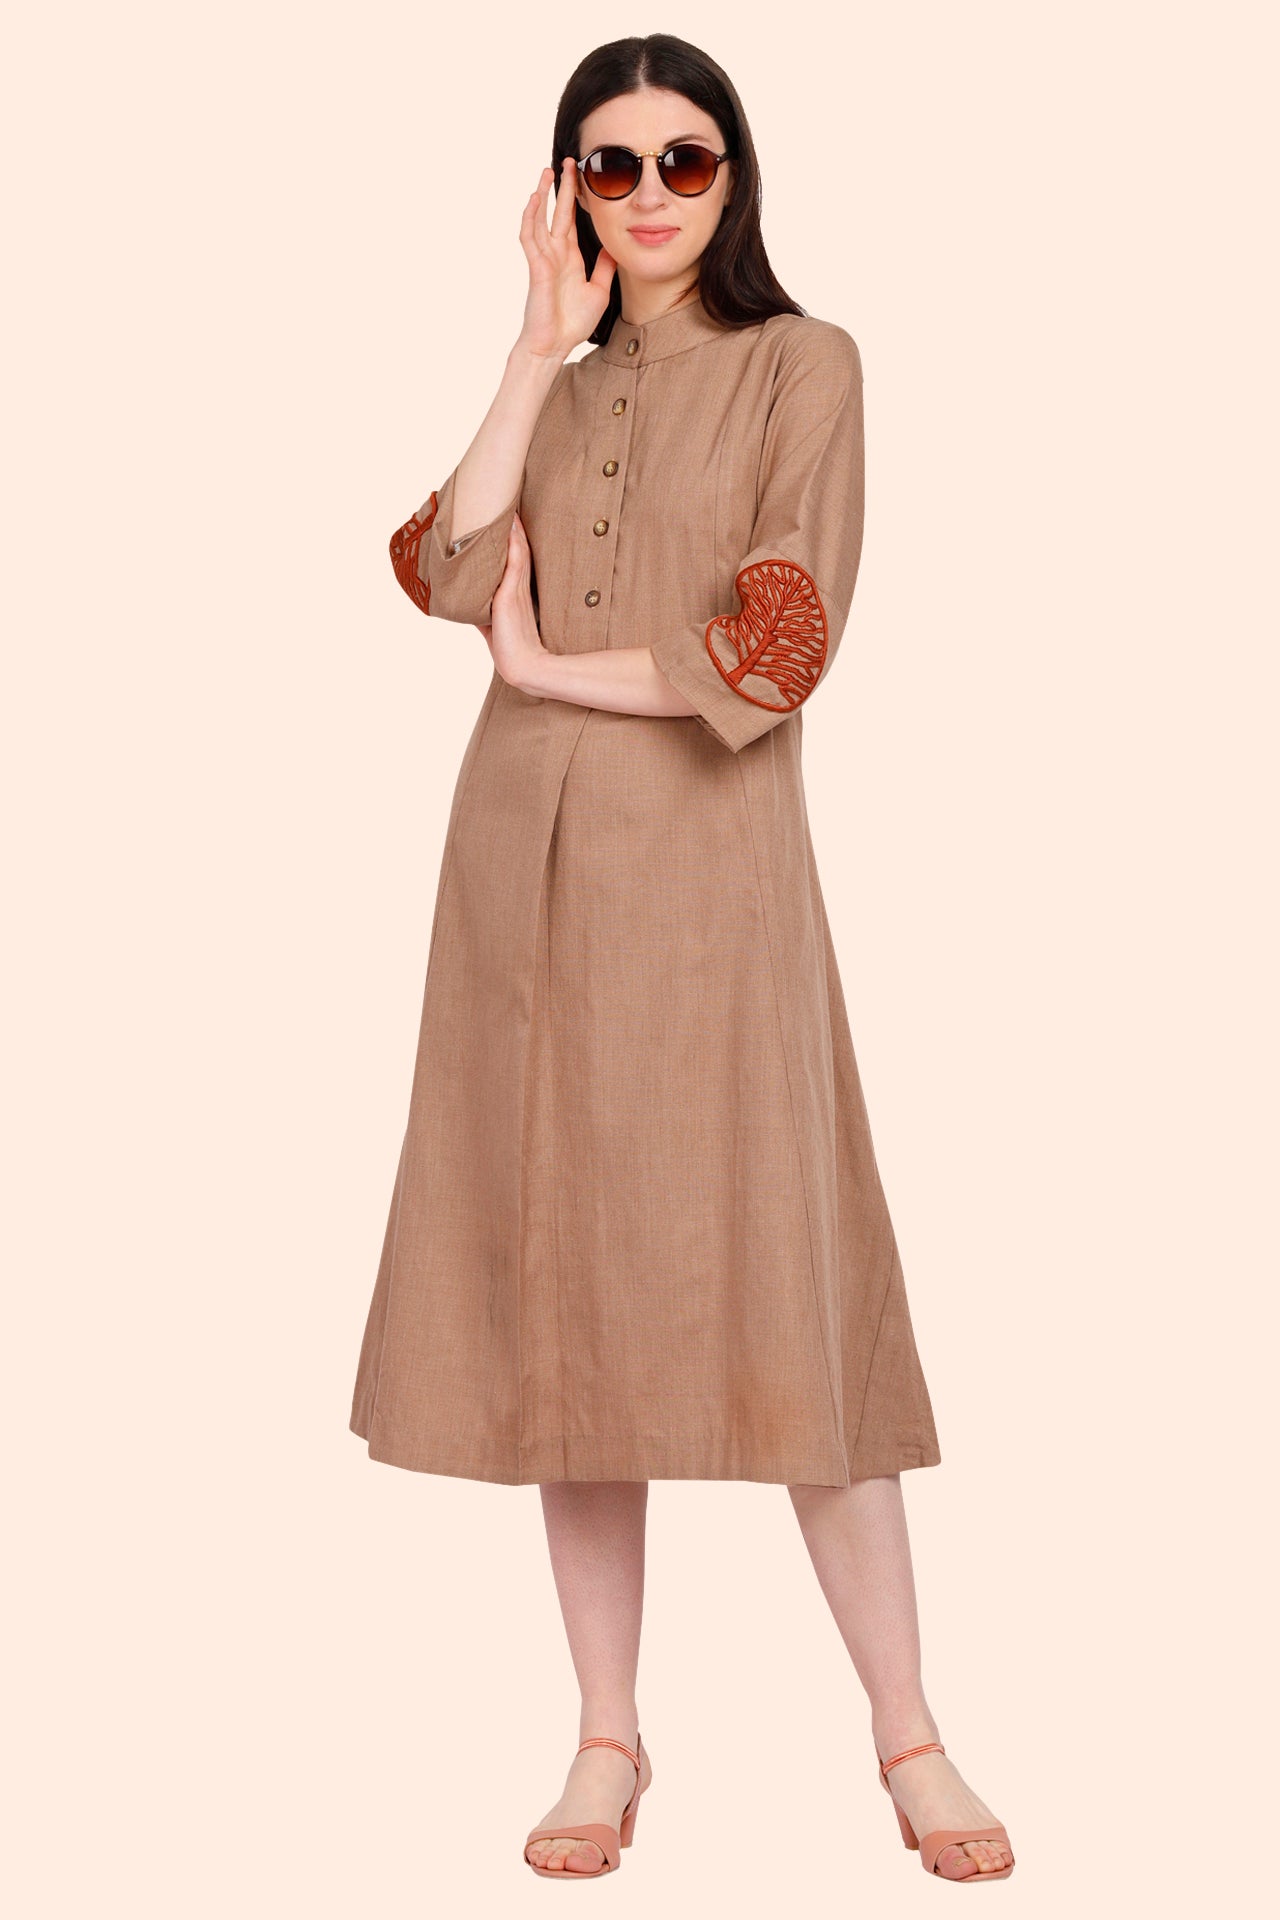 Buy Woolen Short Kurti & Winter Wear For Women - Apella